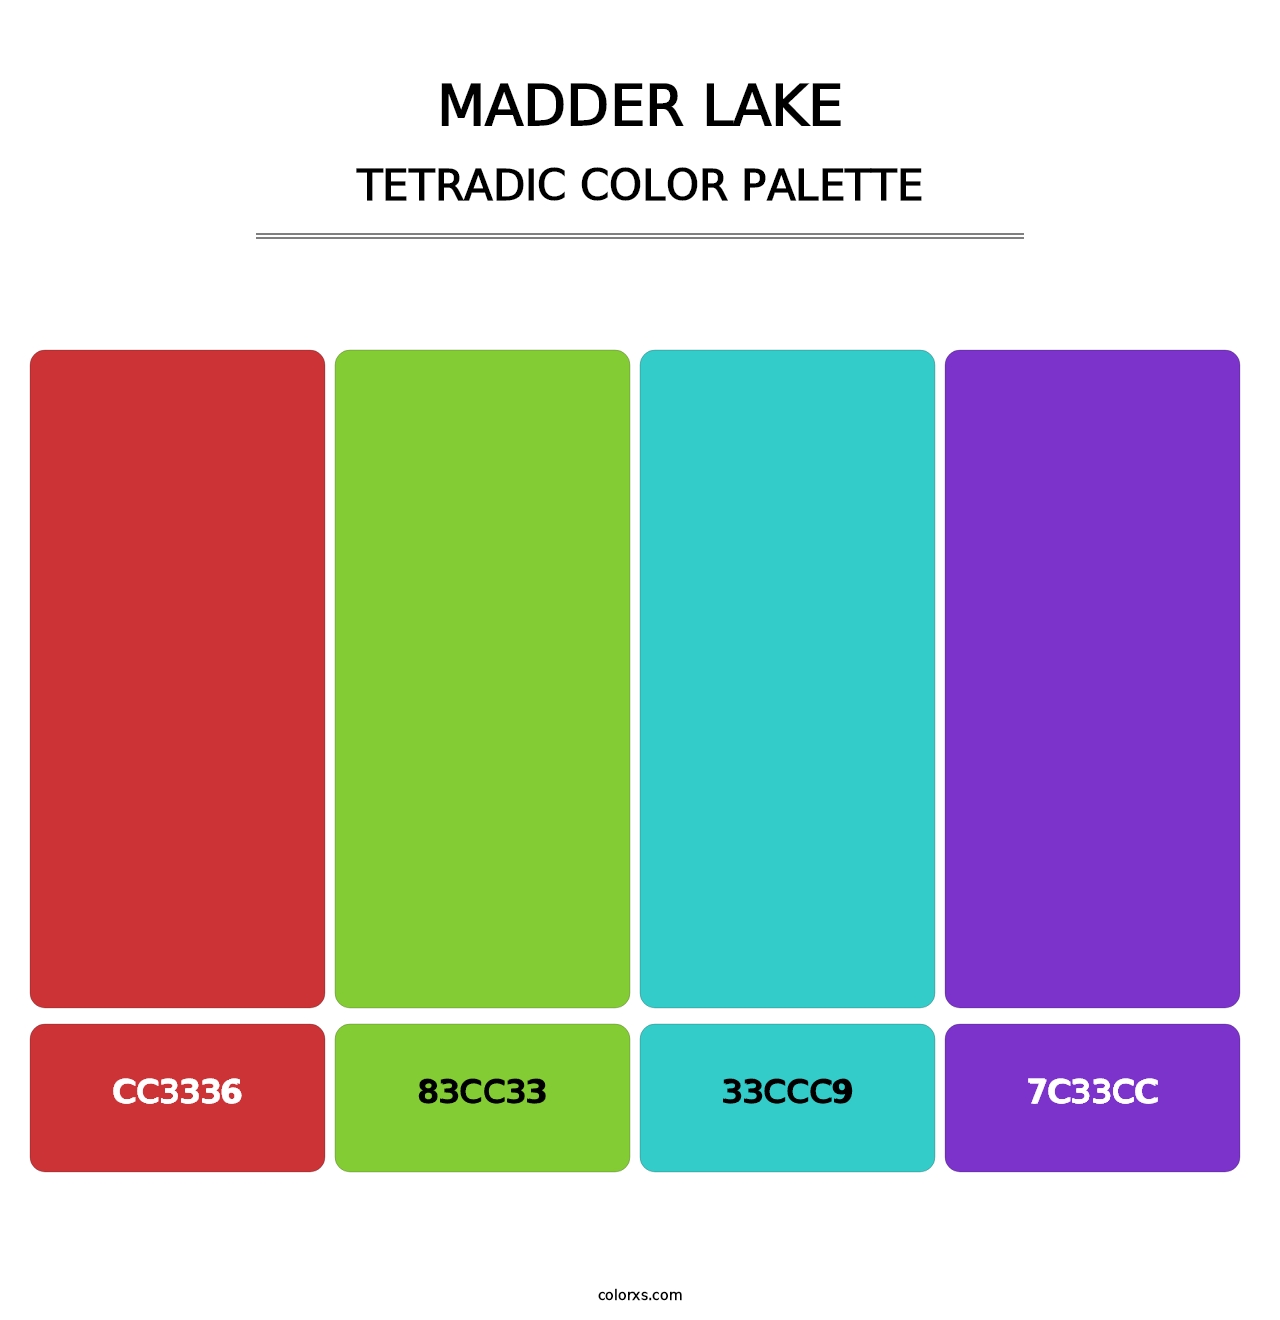 Madder Lake - Tetradic Color Palette